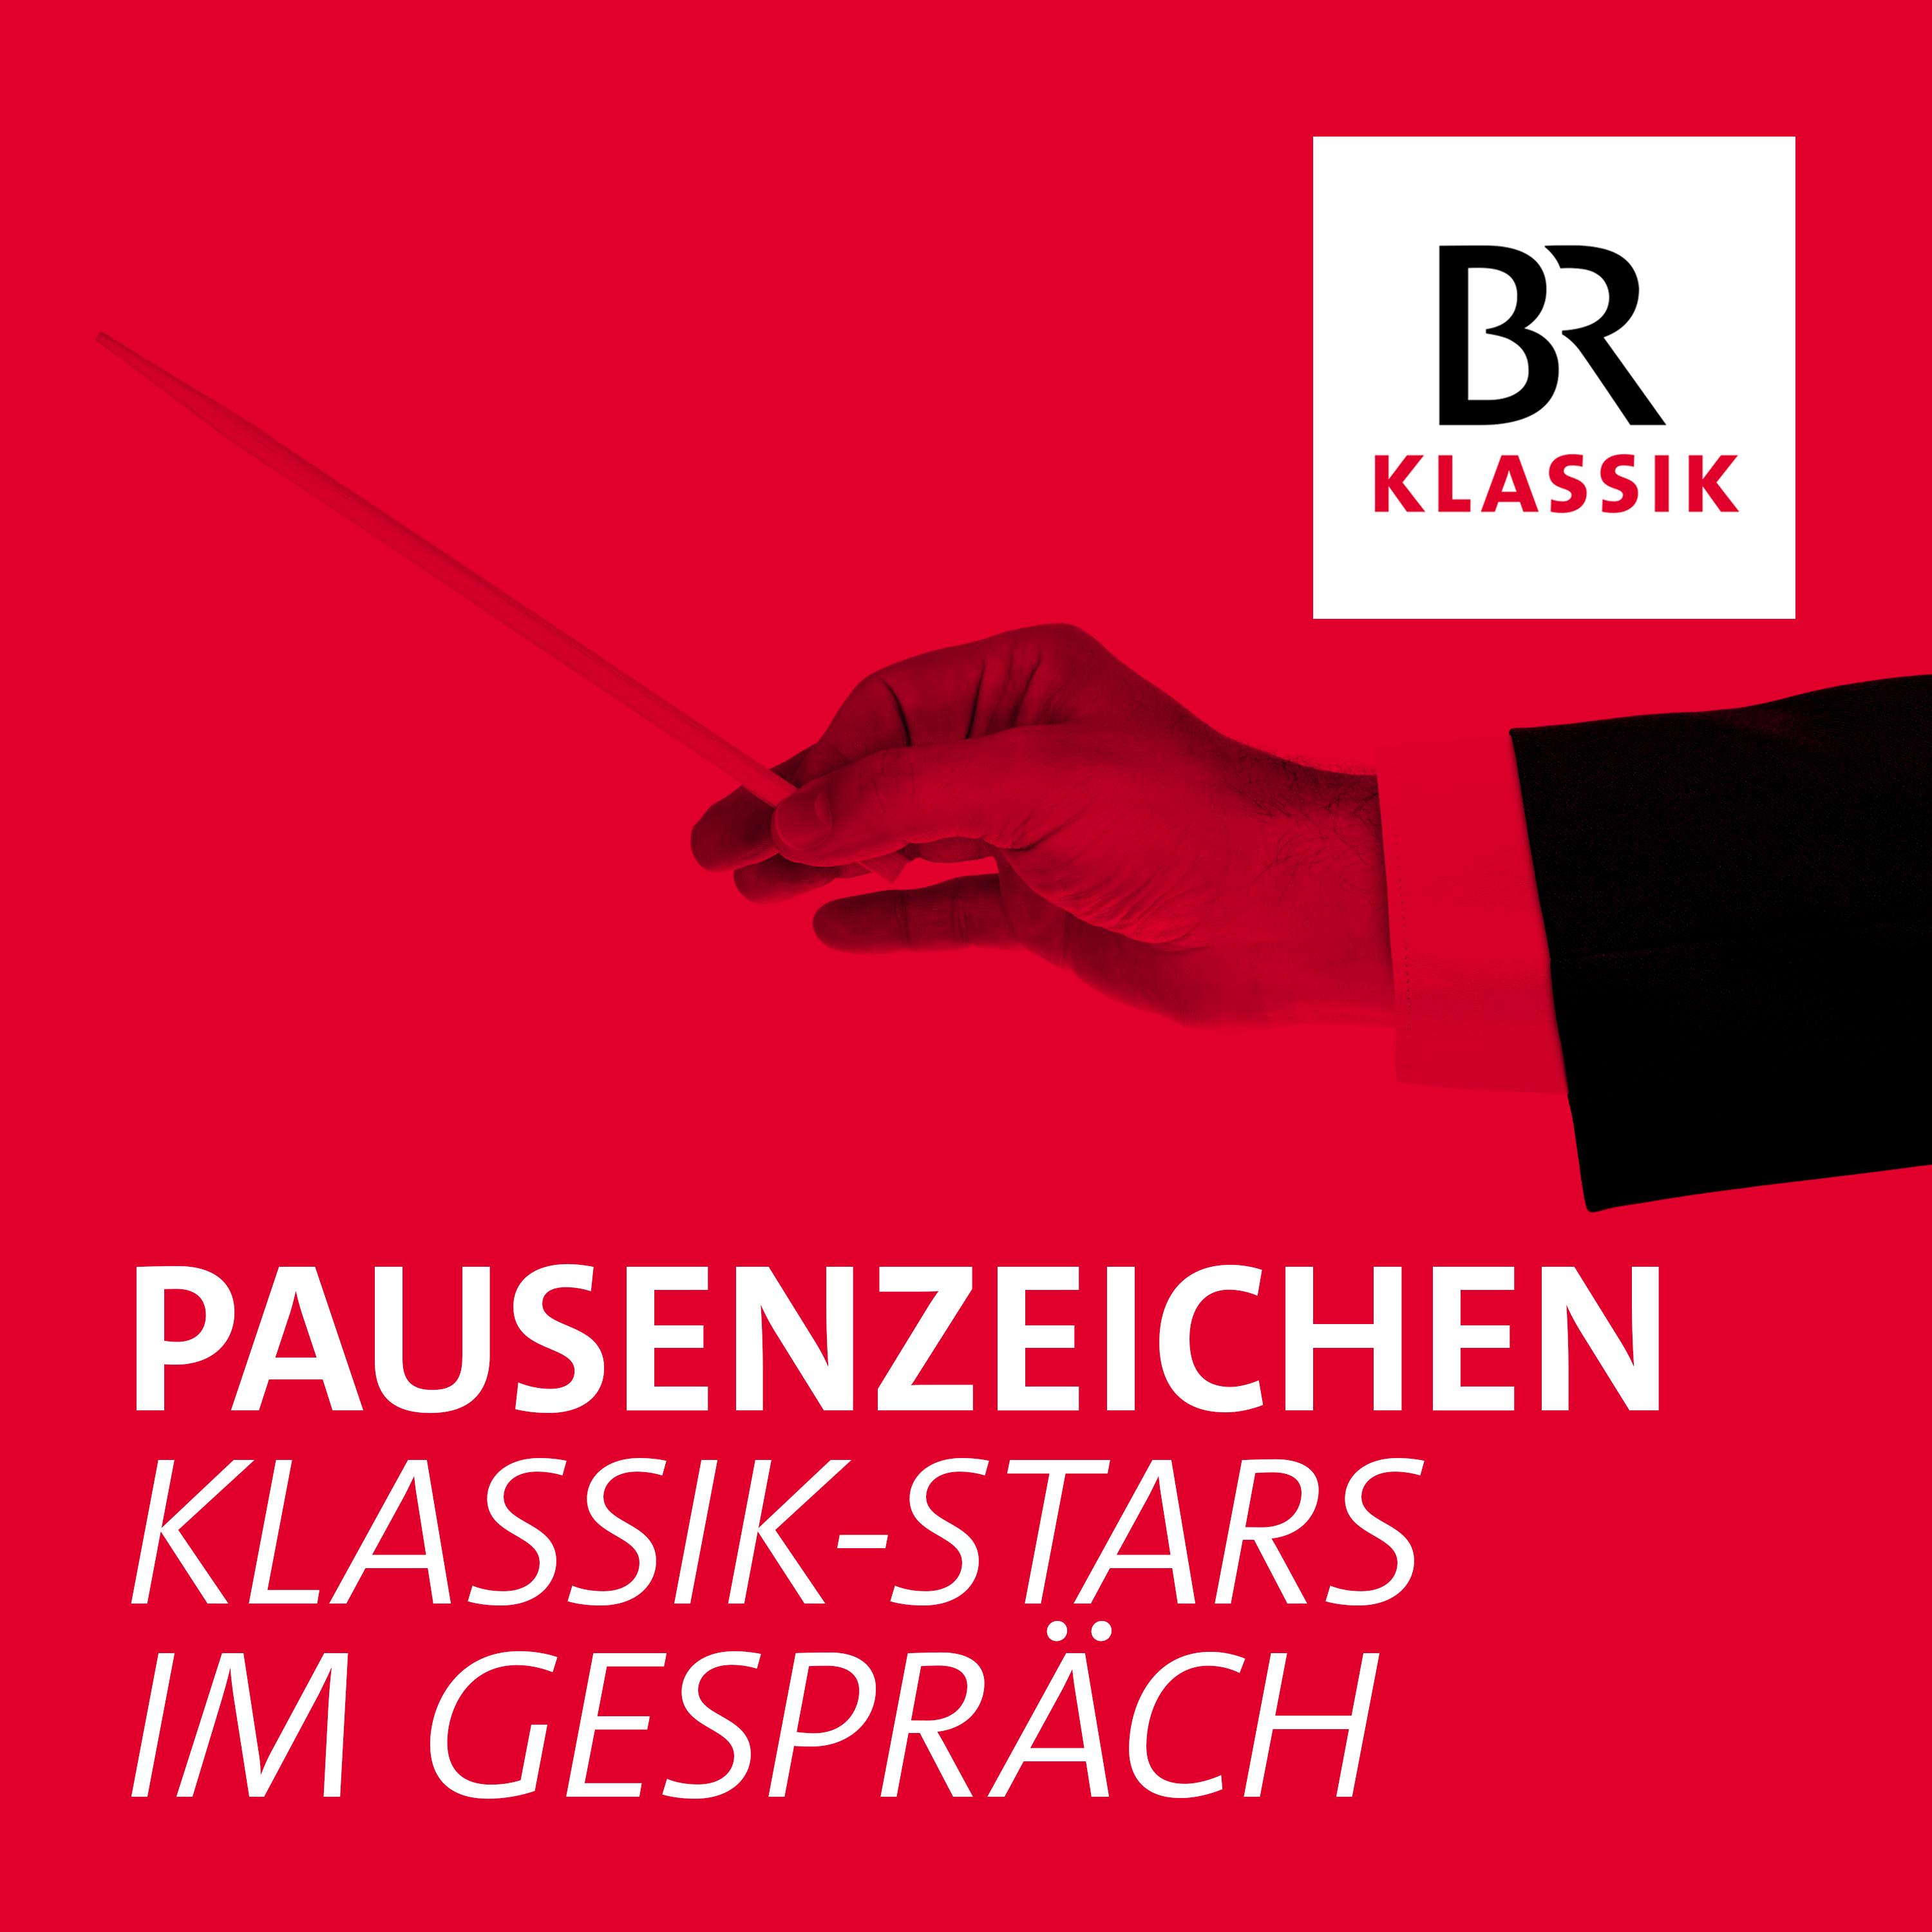 PausenZeichen - Klassik-Stars im Gespräch:Bayerischer Rundfunk